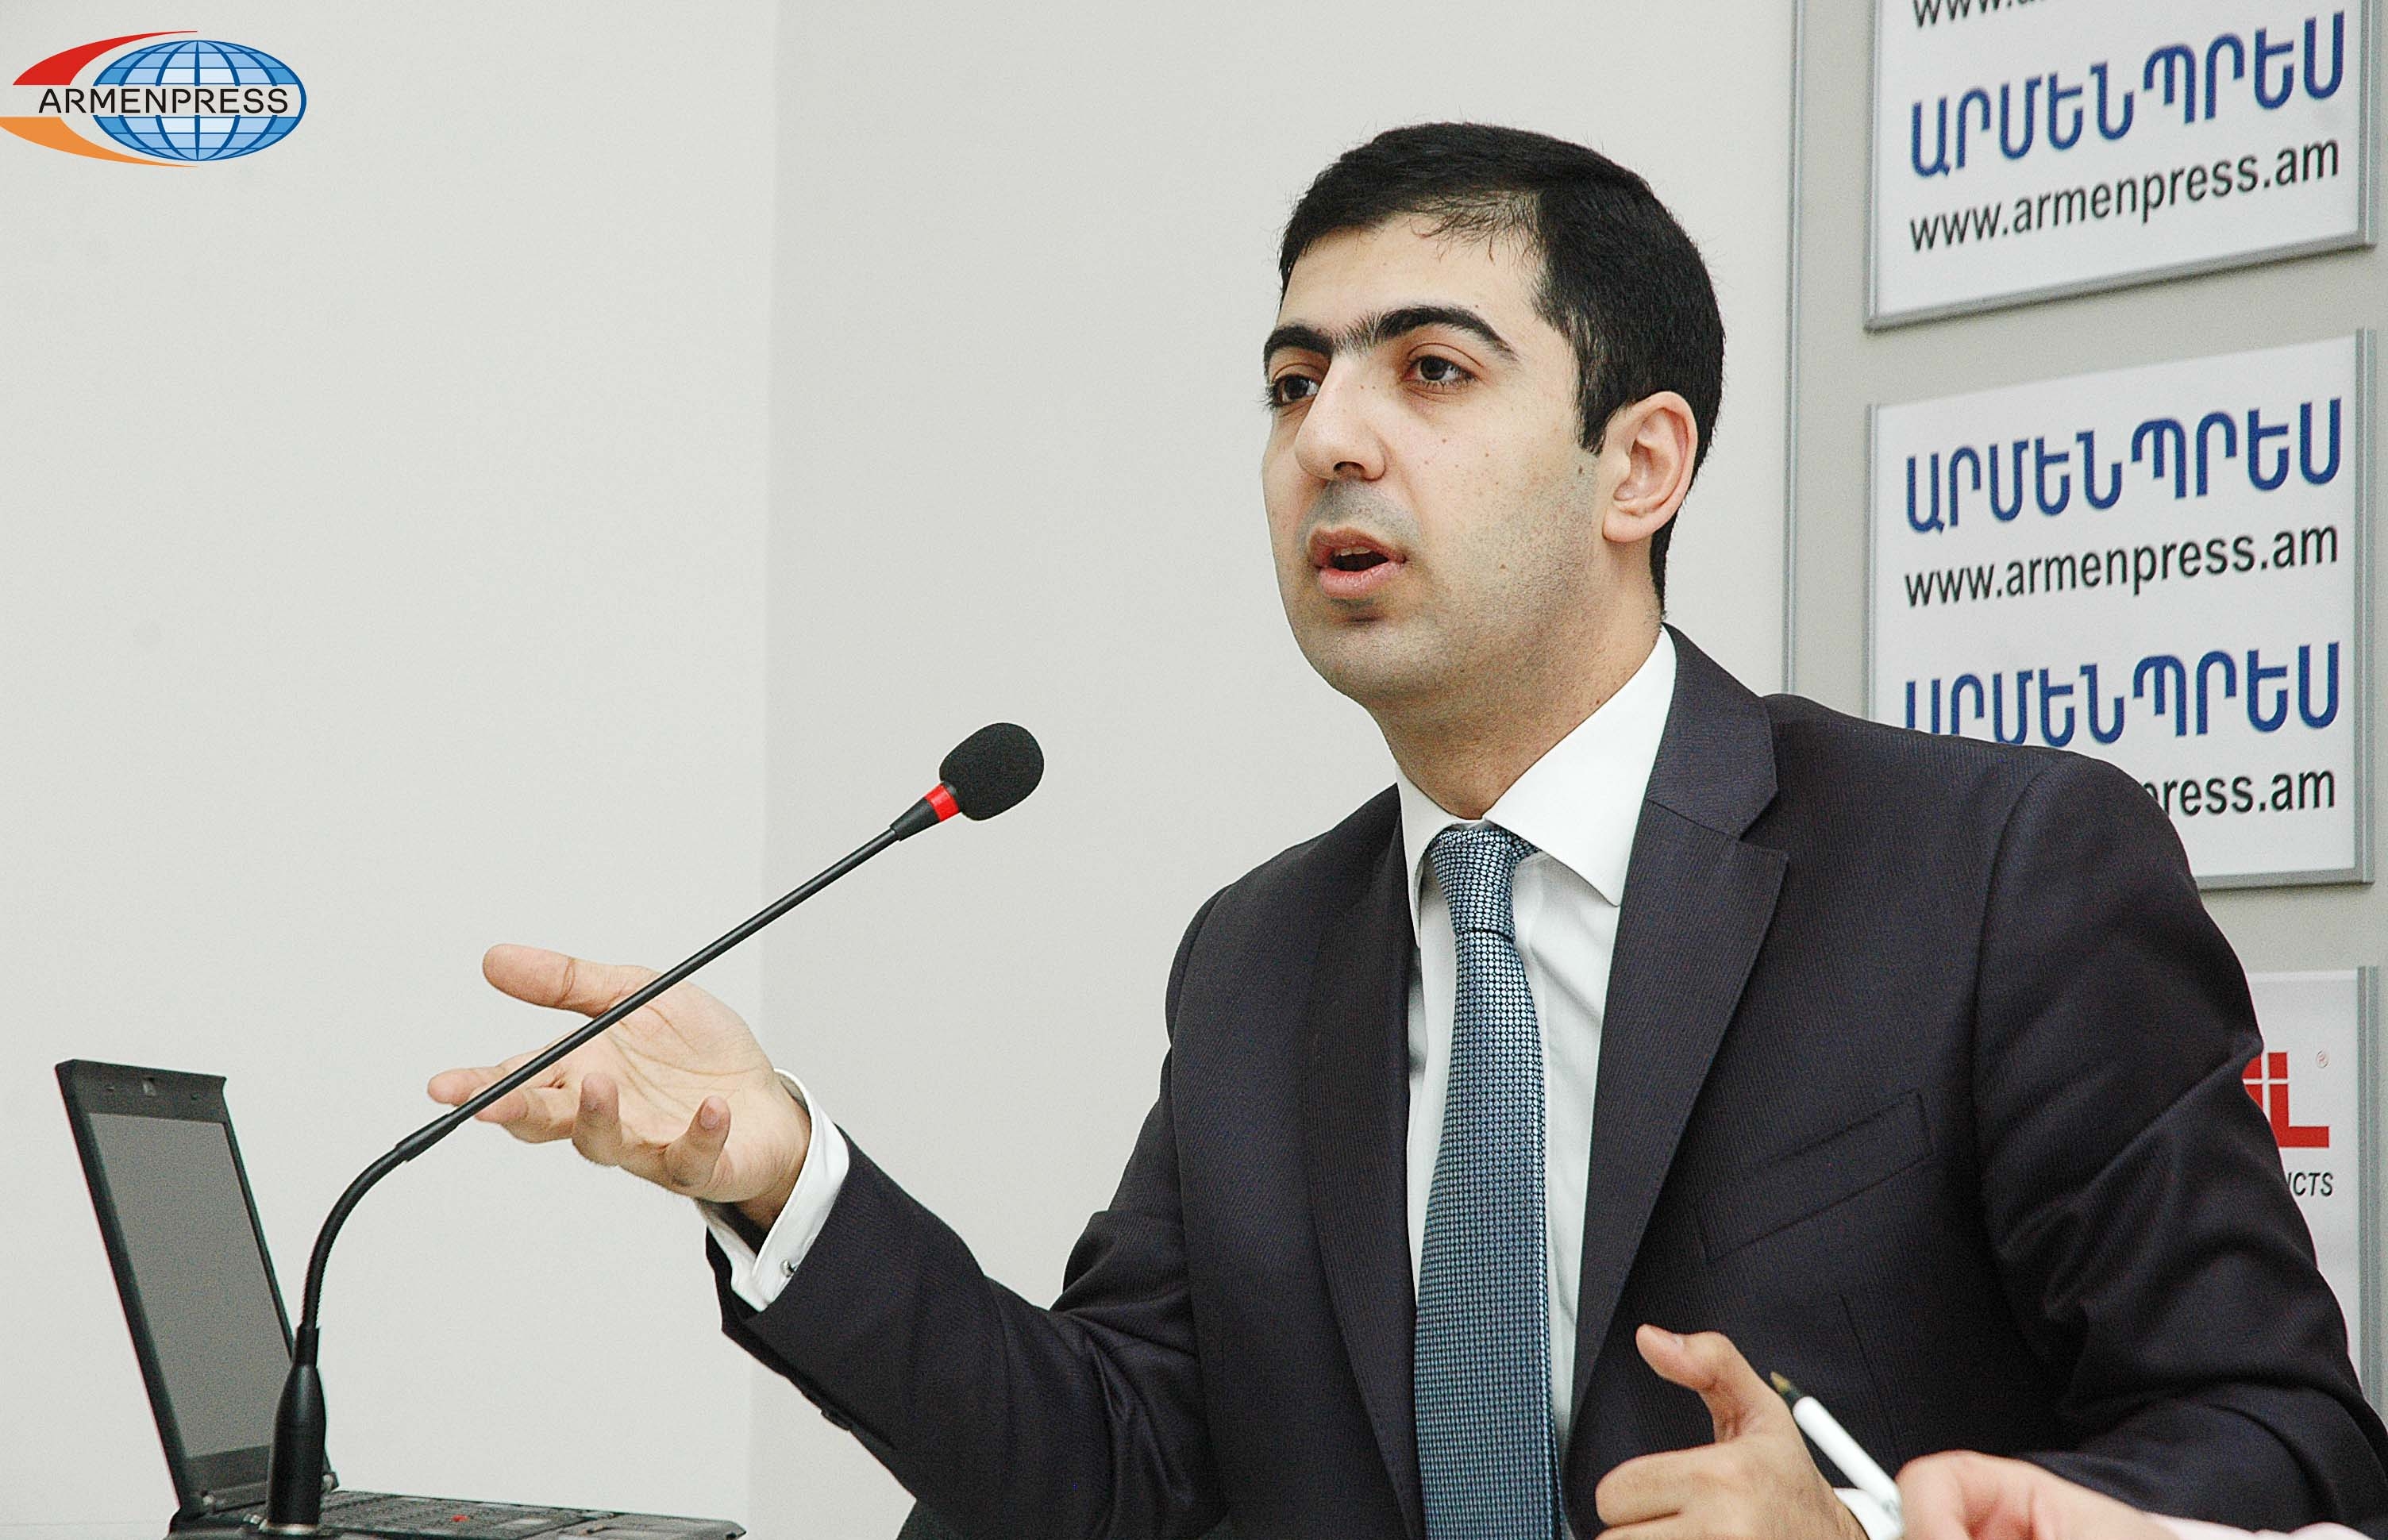 Армения переходит к электронной системе нотариальных услуг